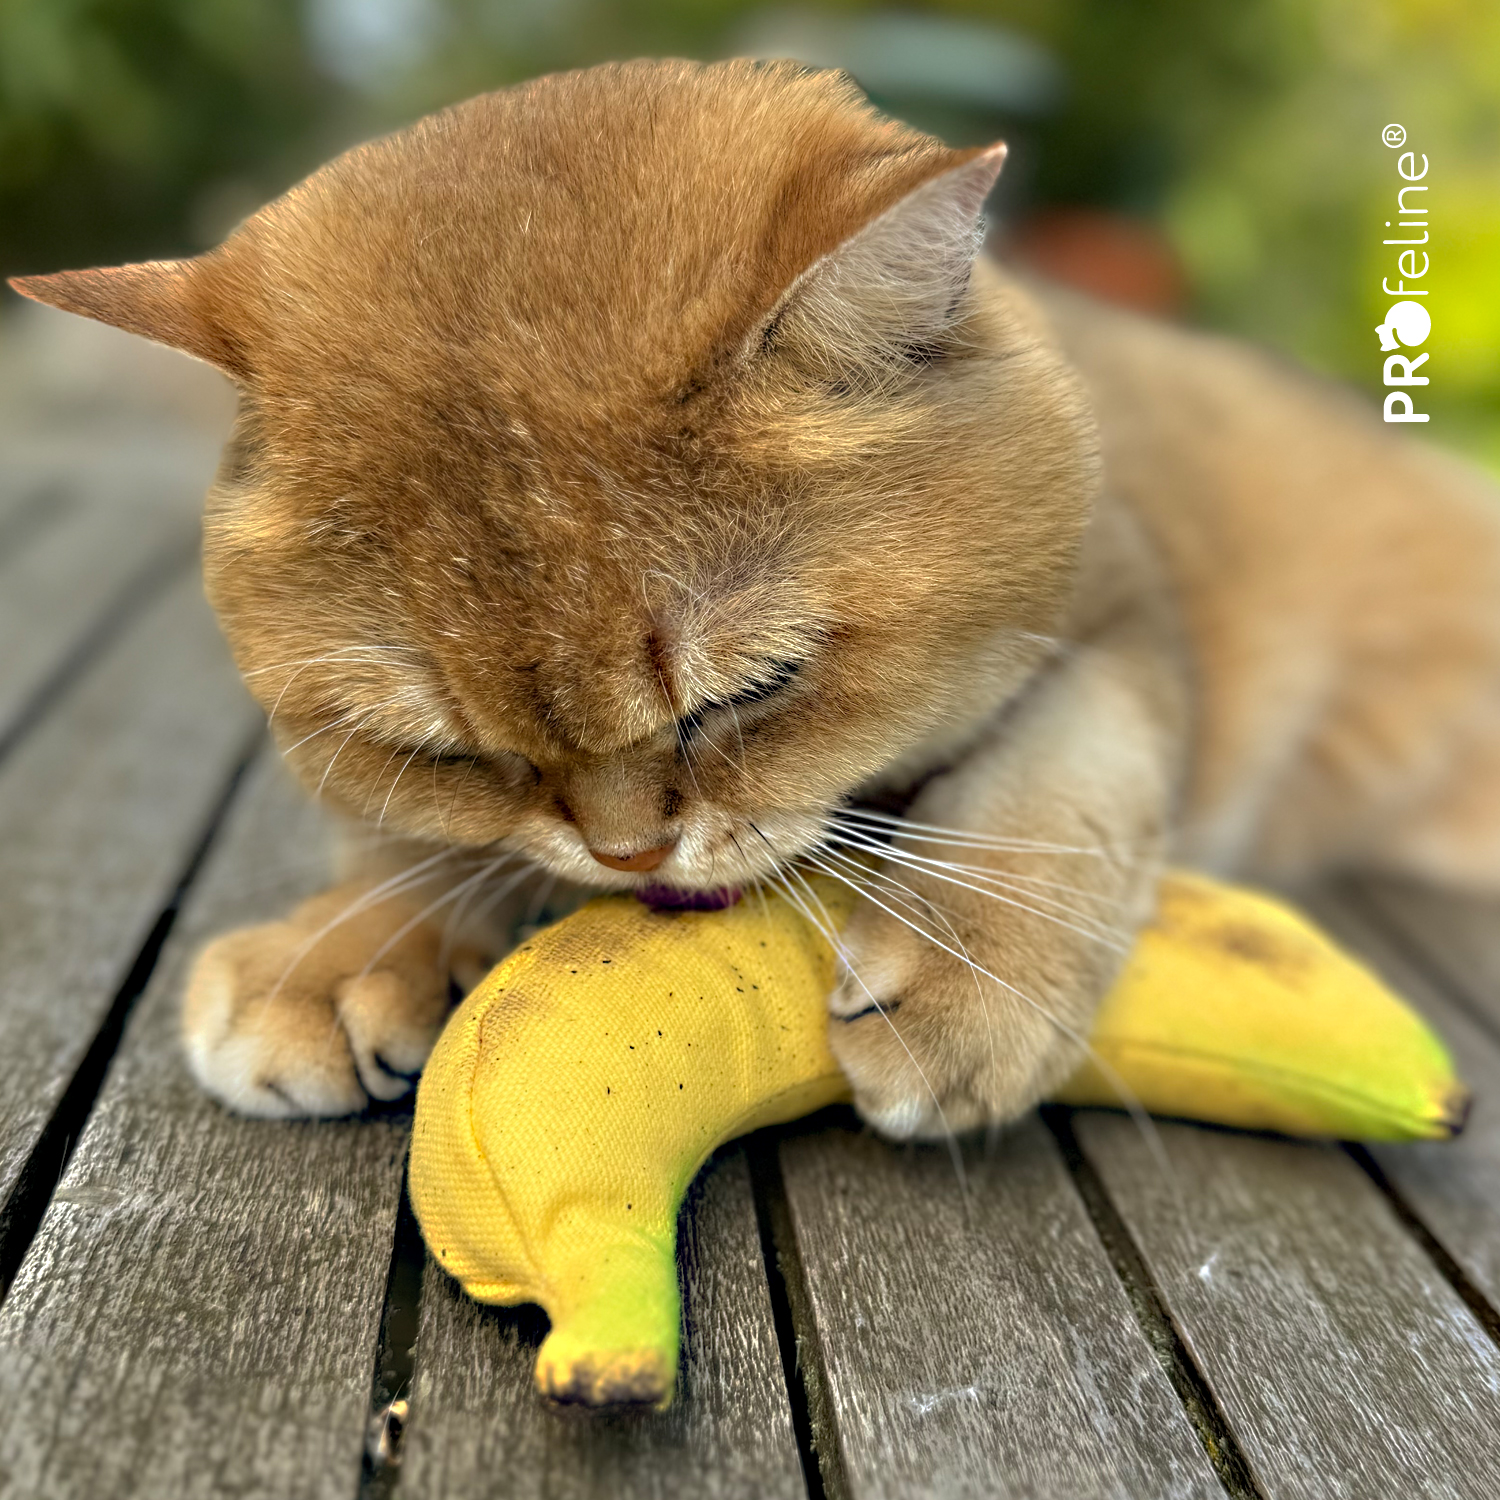 Katzenspielzeug Banane mit Katzenminze USA